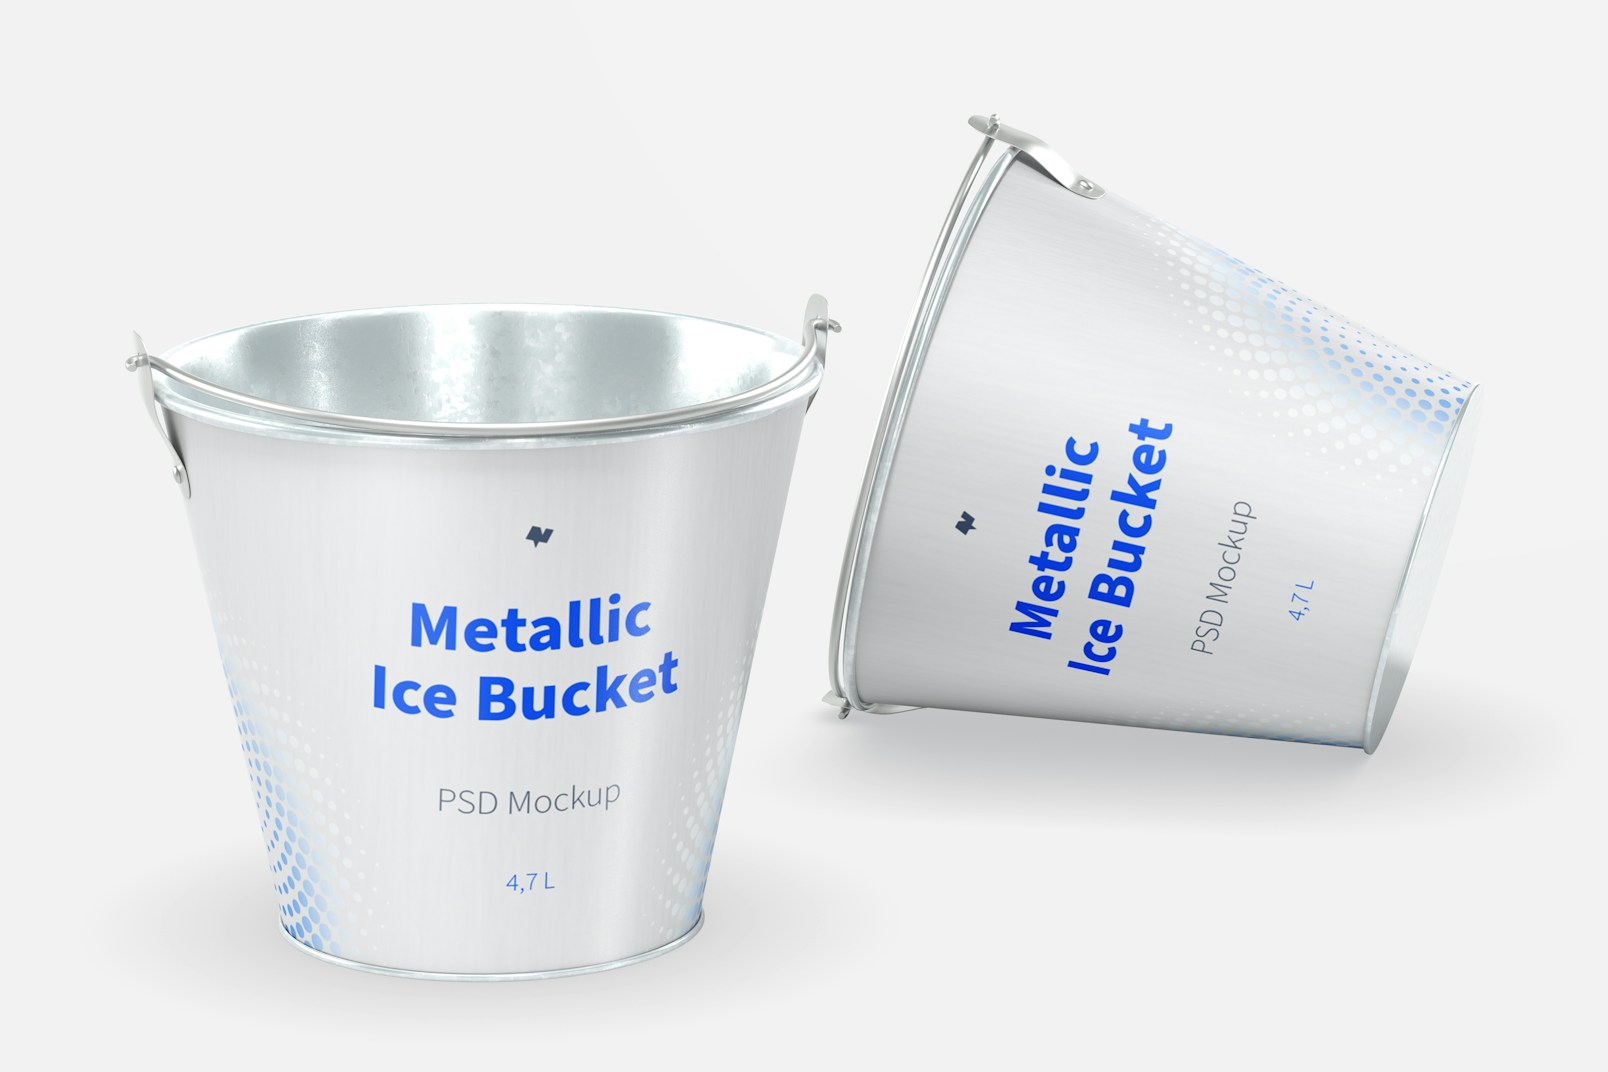 Metallic Ice Bucket Mockup, Perspective